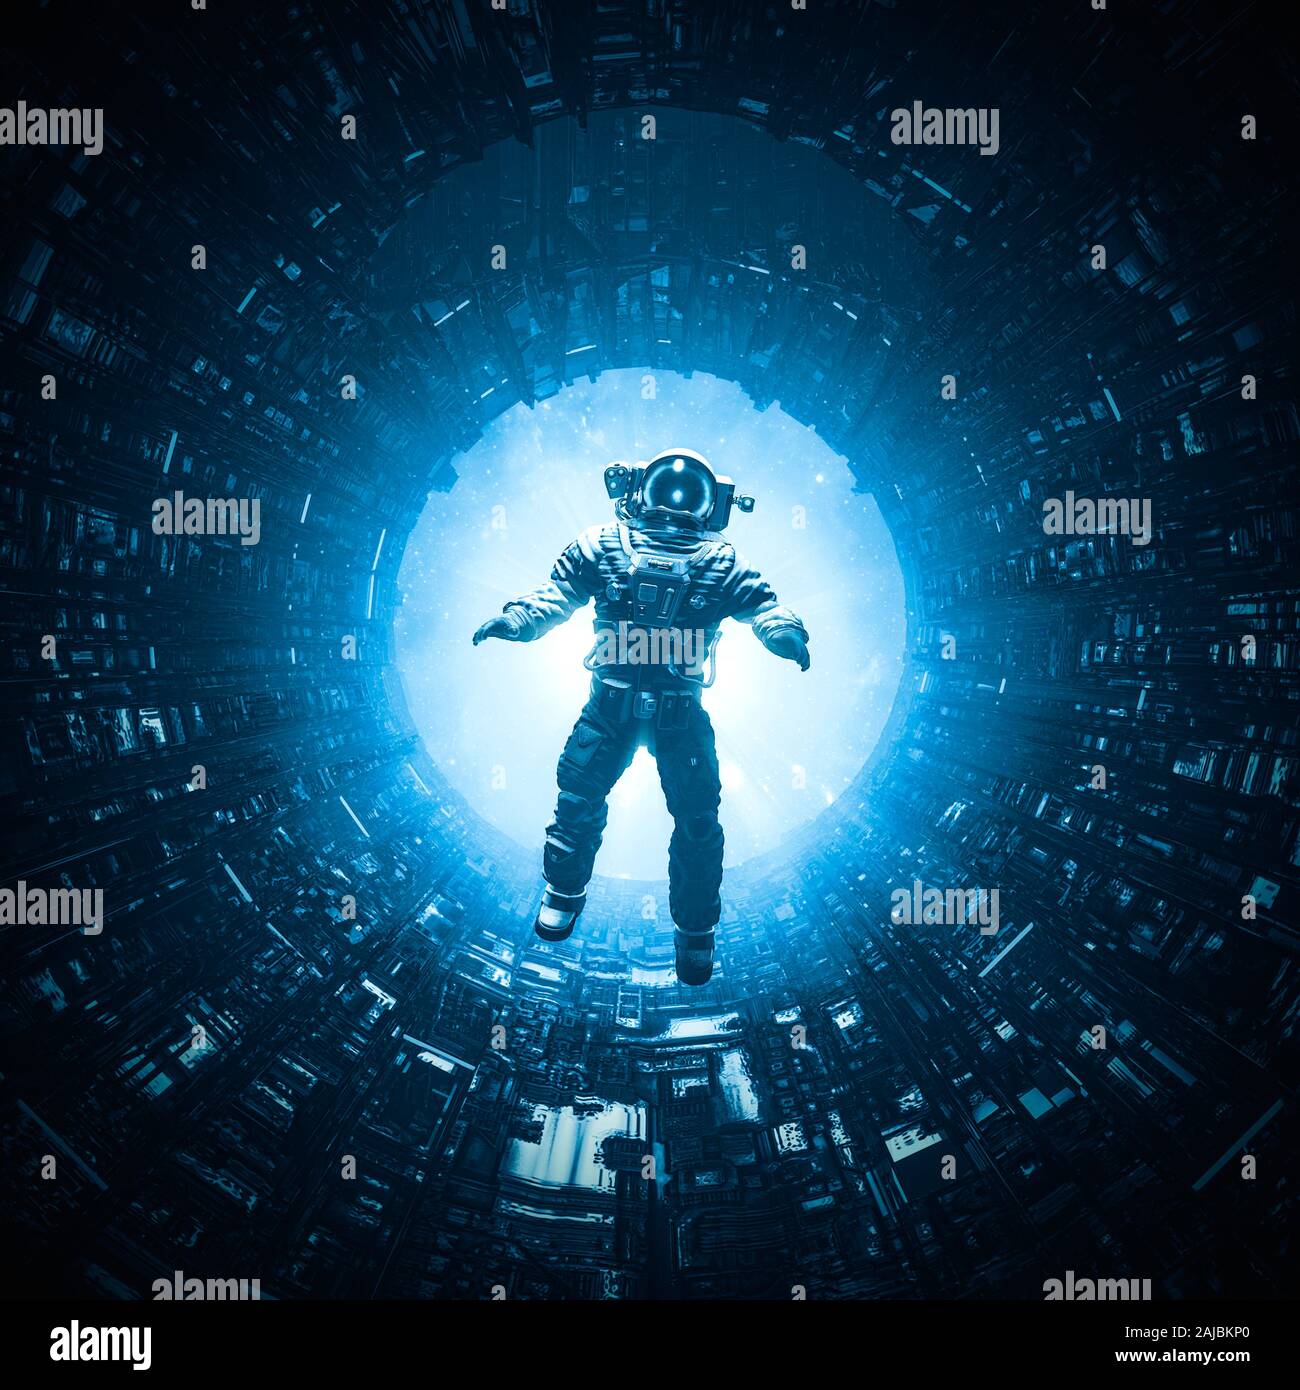 Los peligros de los viajes espaciales / 3D ilustración de astronauta flotando en la estación espacial misterioso corredor oscuro Foto de stock